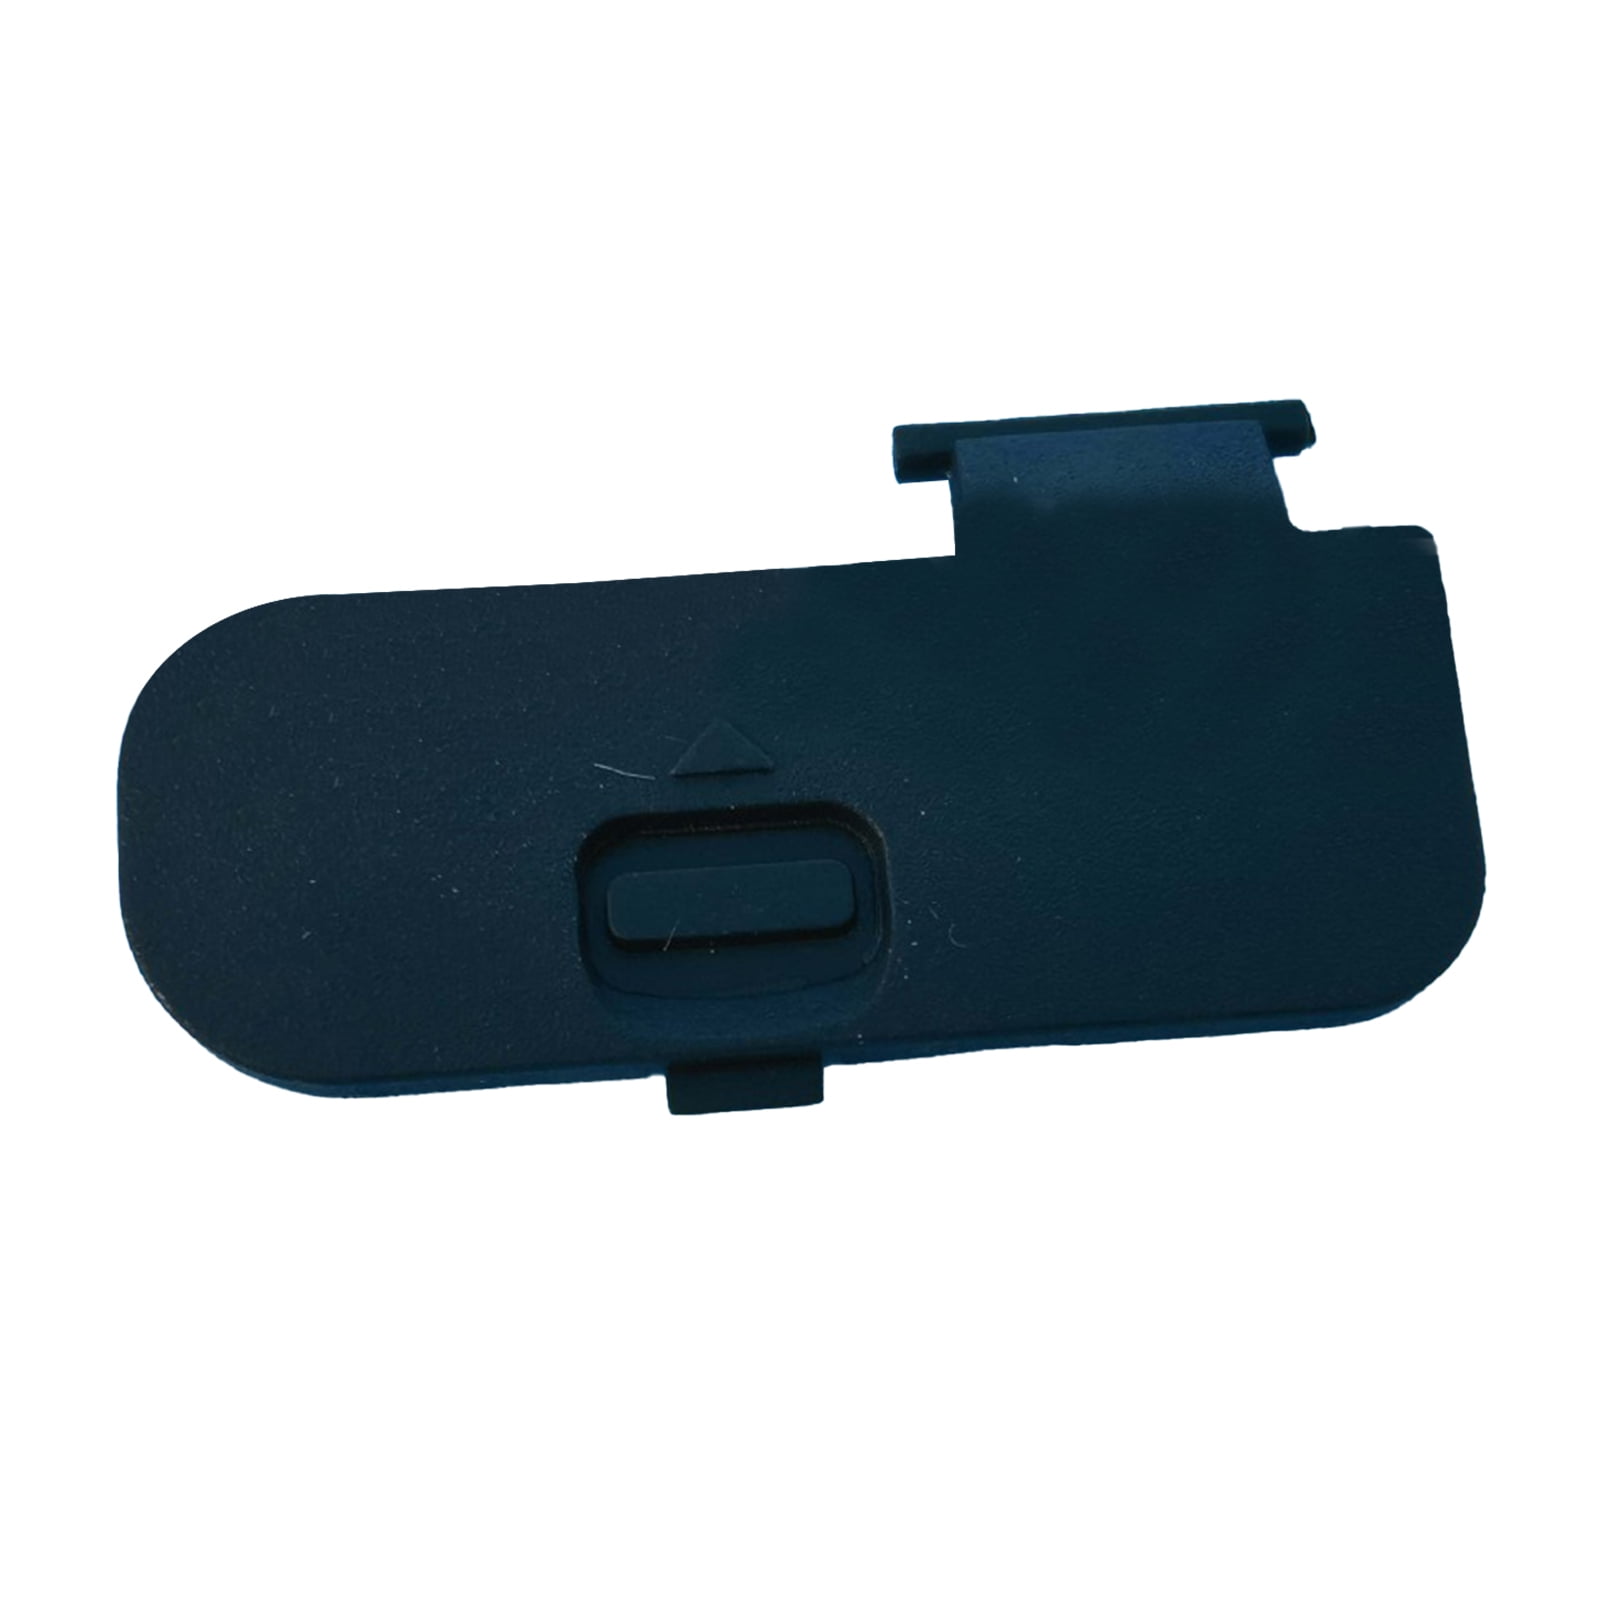 New Battery Door Cover Case Lip Cap for NIKON D7000 Digital Camera High Quality 